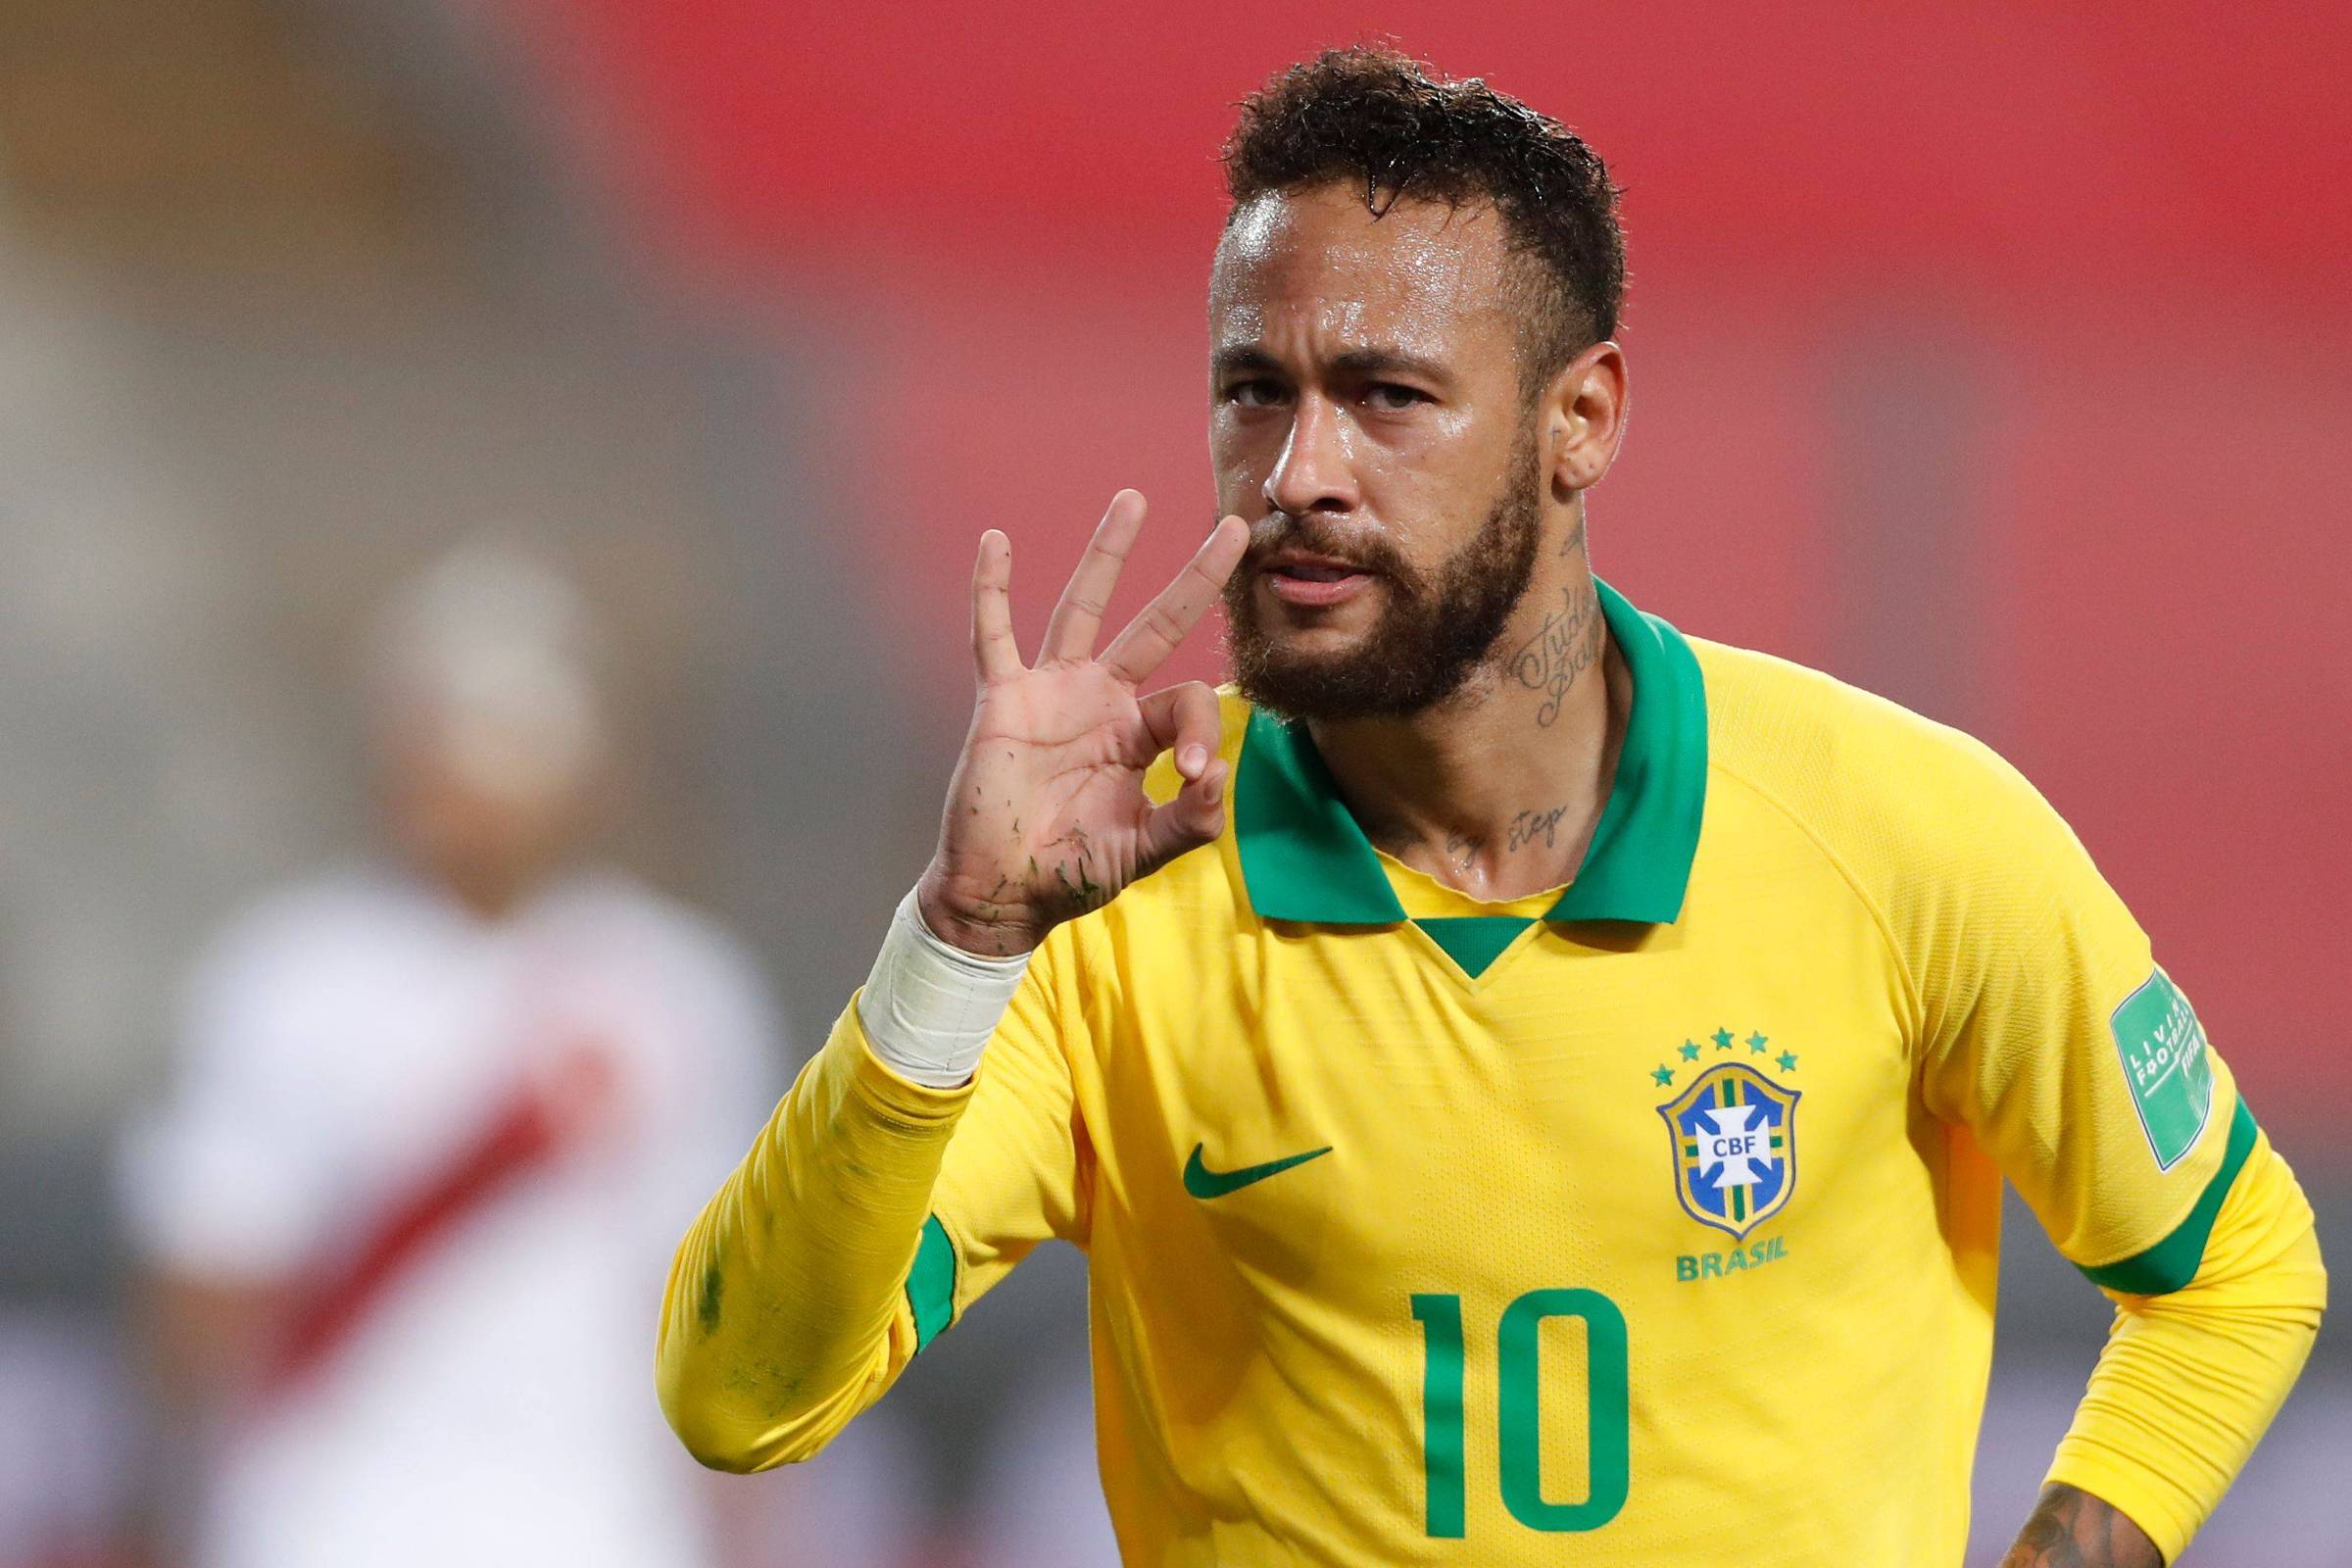 Em seu 1º jogo sem público, Brasil inicia caminhada rumo à Copa diante da  Bolívia